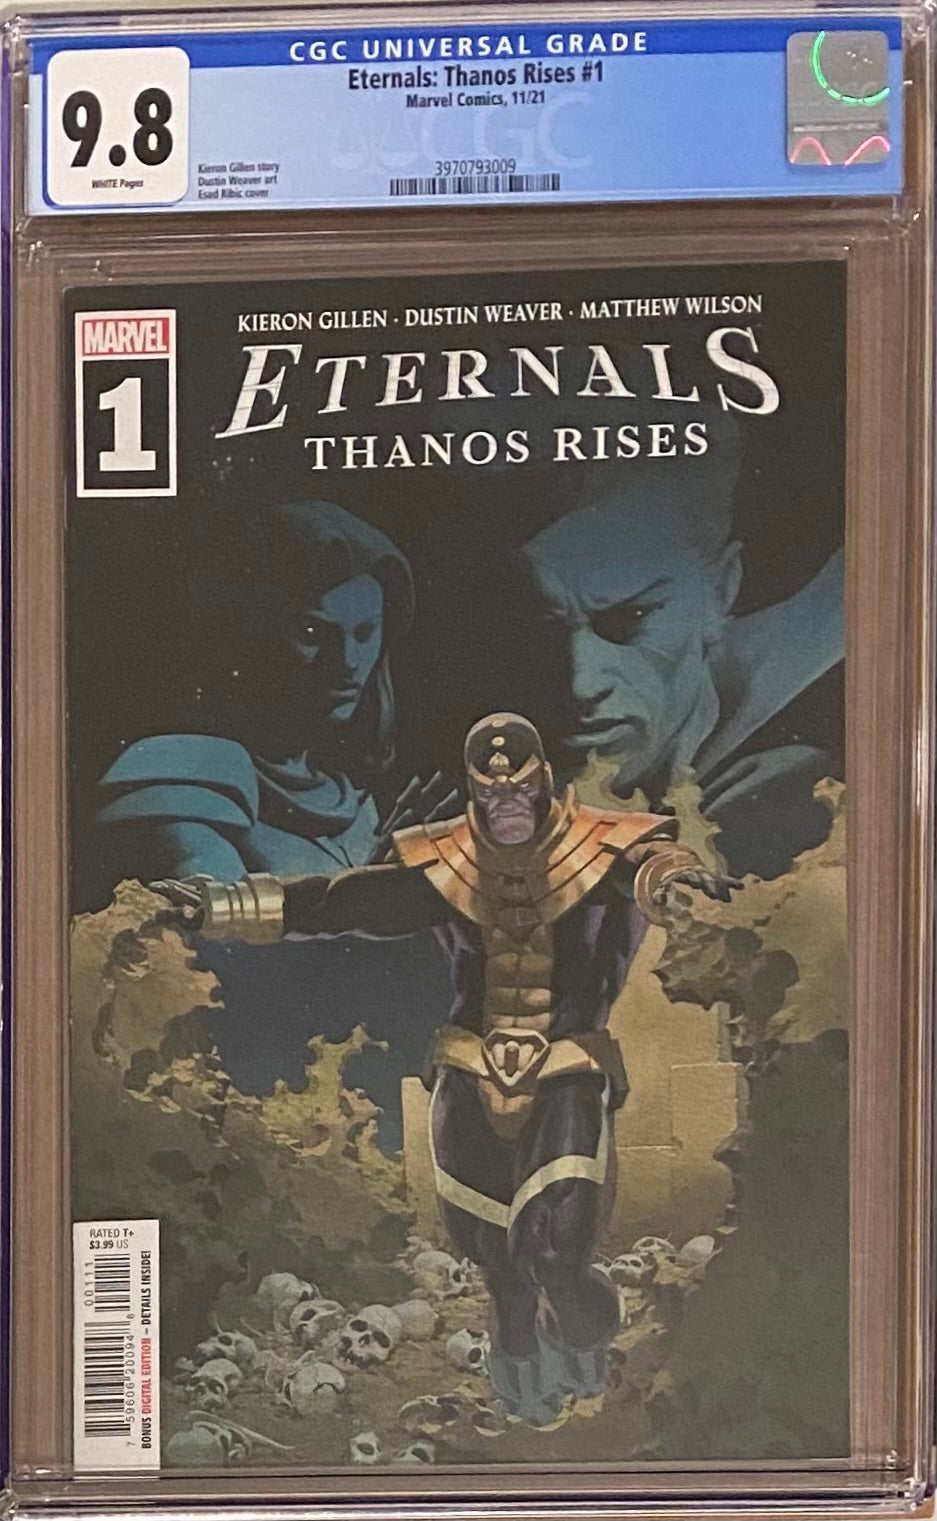 Eternals: Thanos Rises #1 CGC 9.8